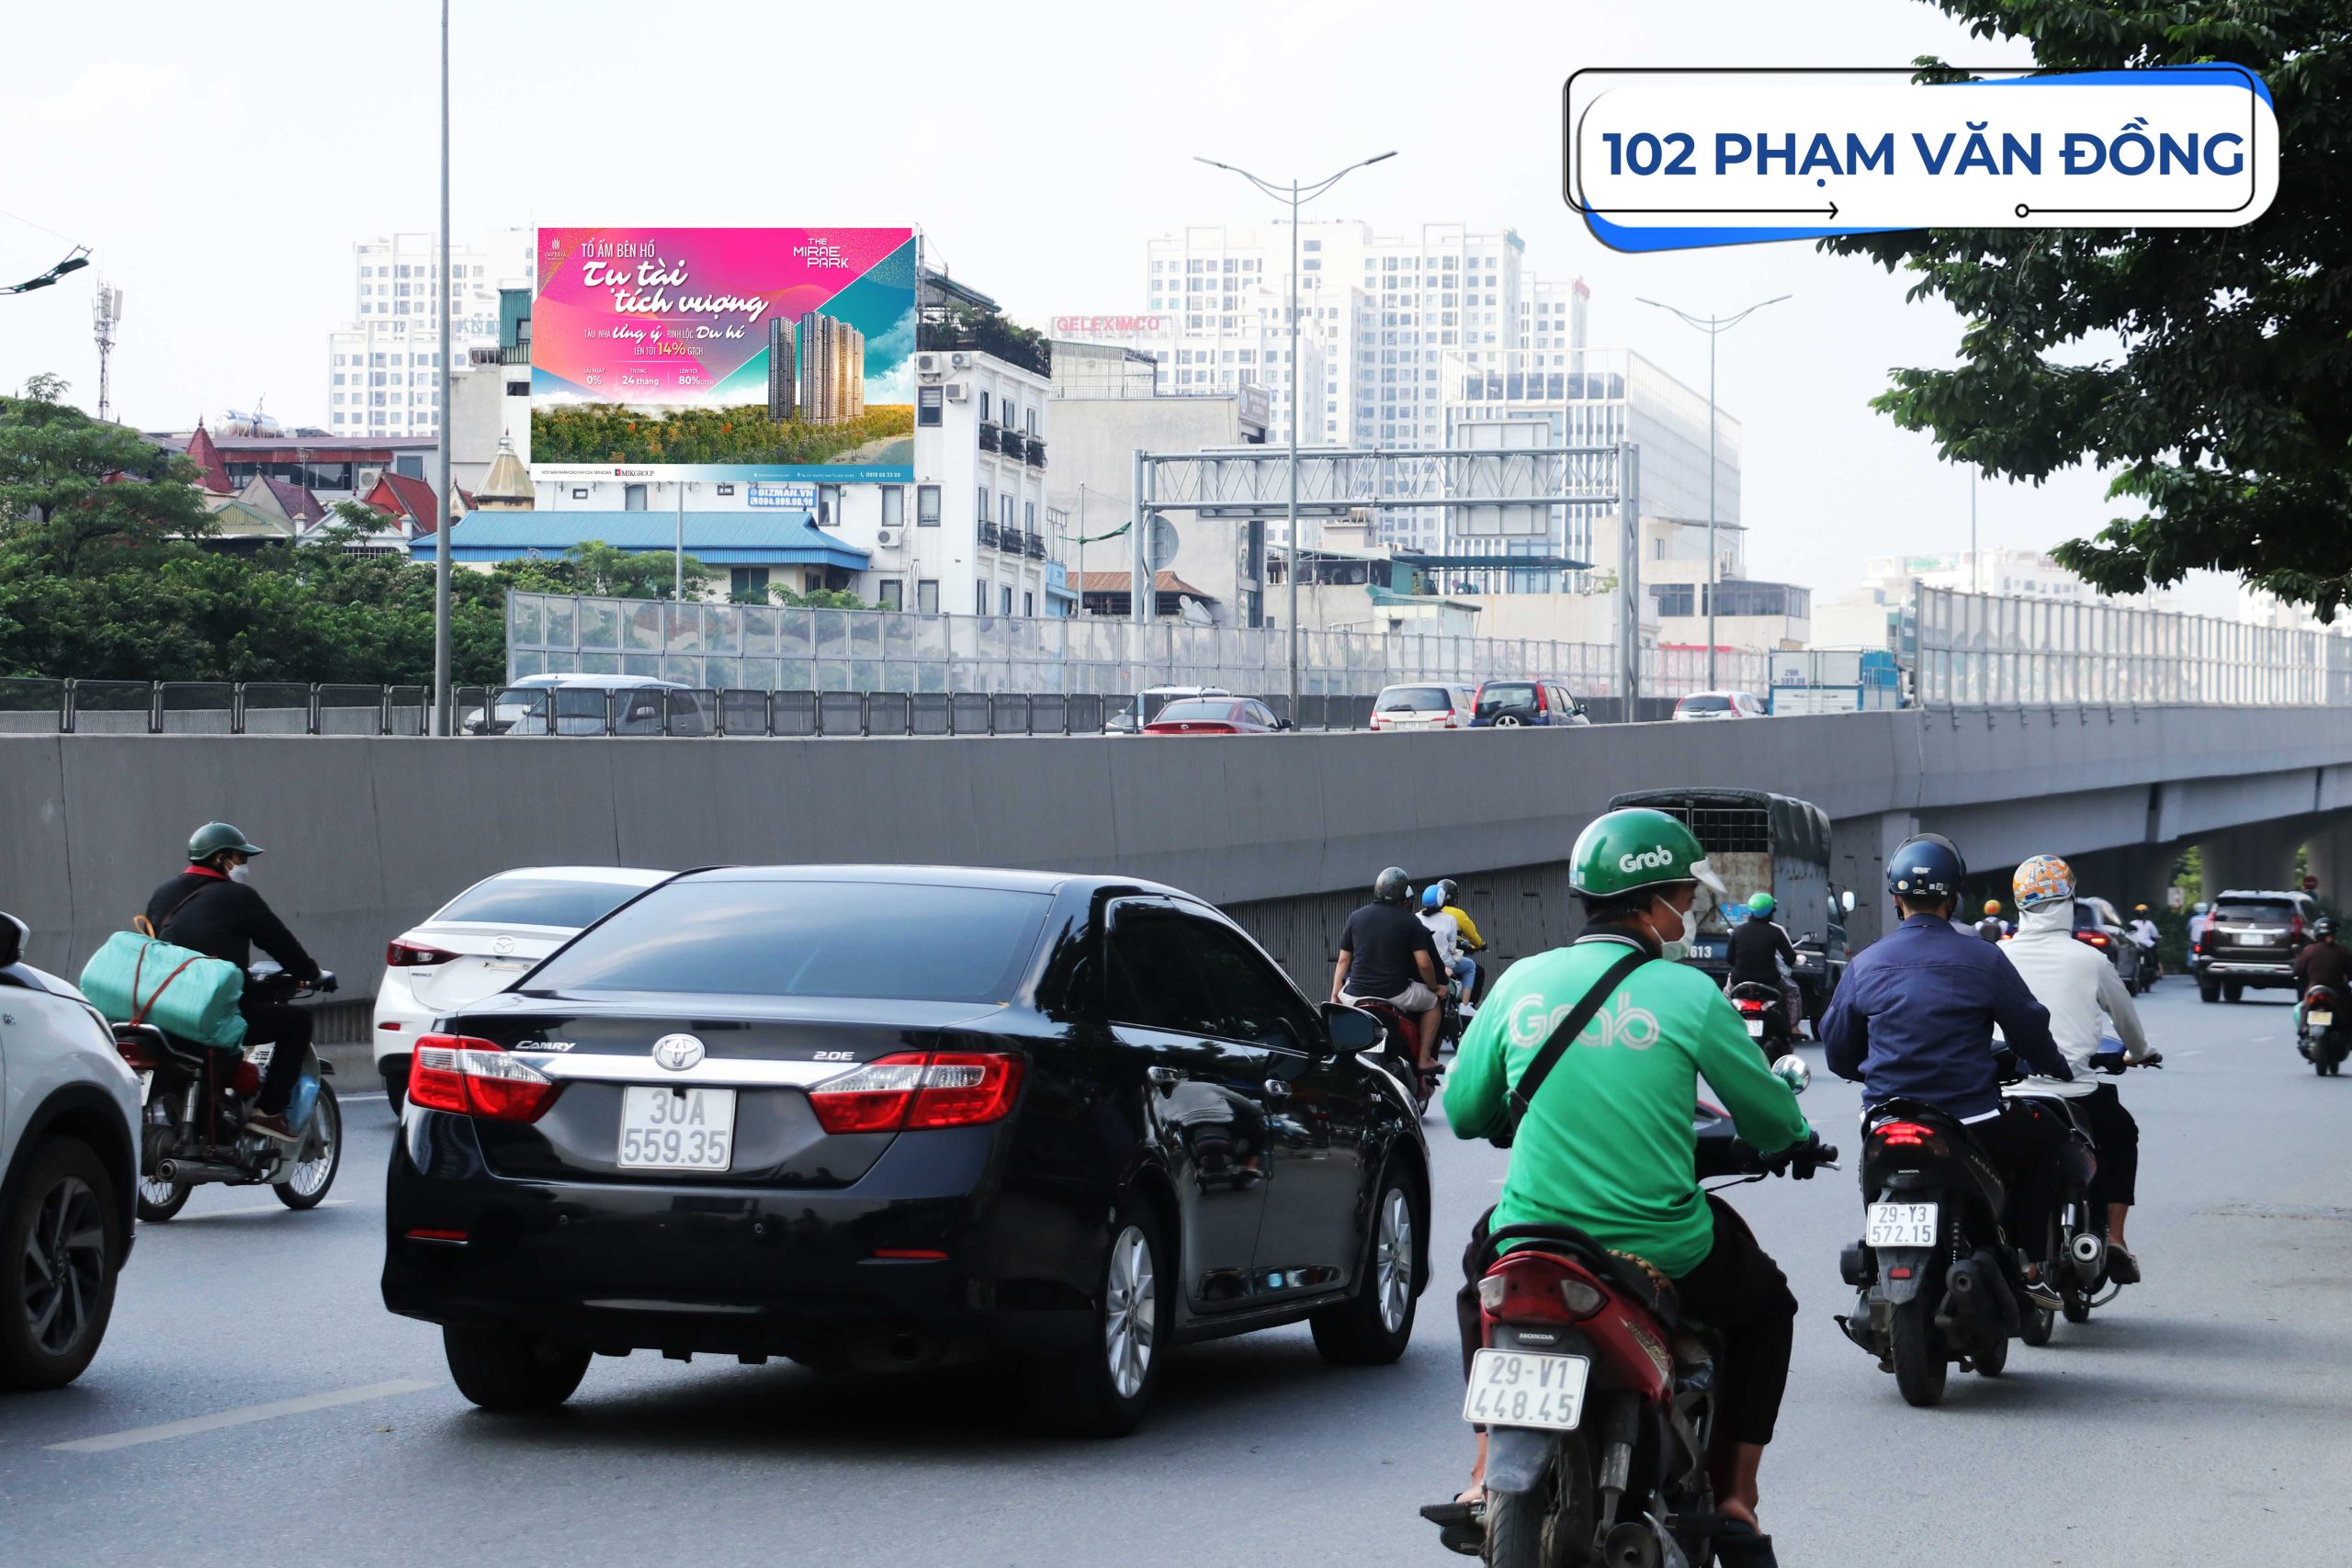 Top 7 bảng quảng cáo nội đô "bắt mắt" nhất tại Hà Nội